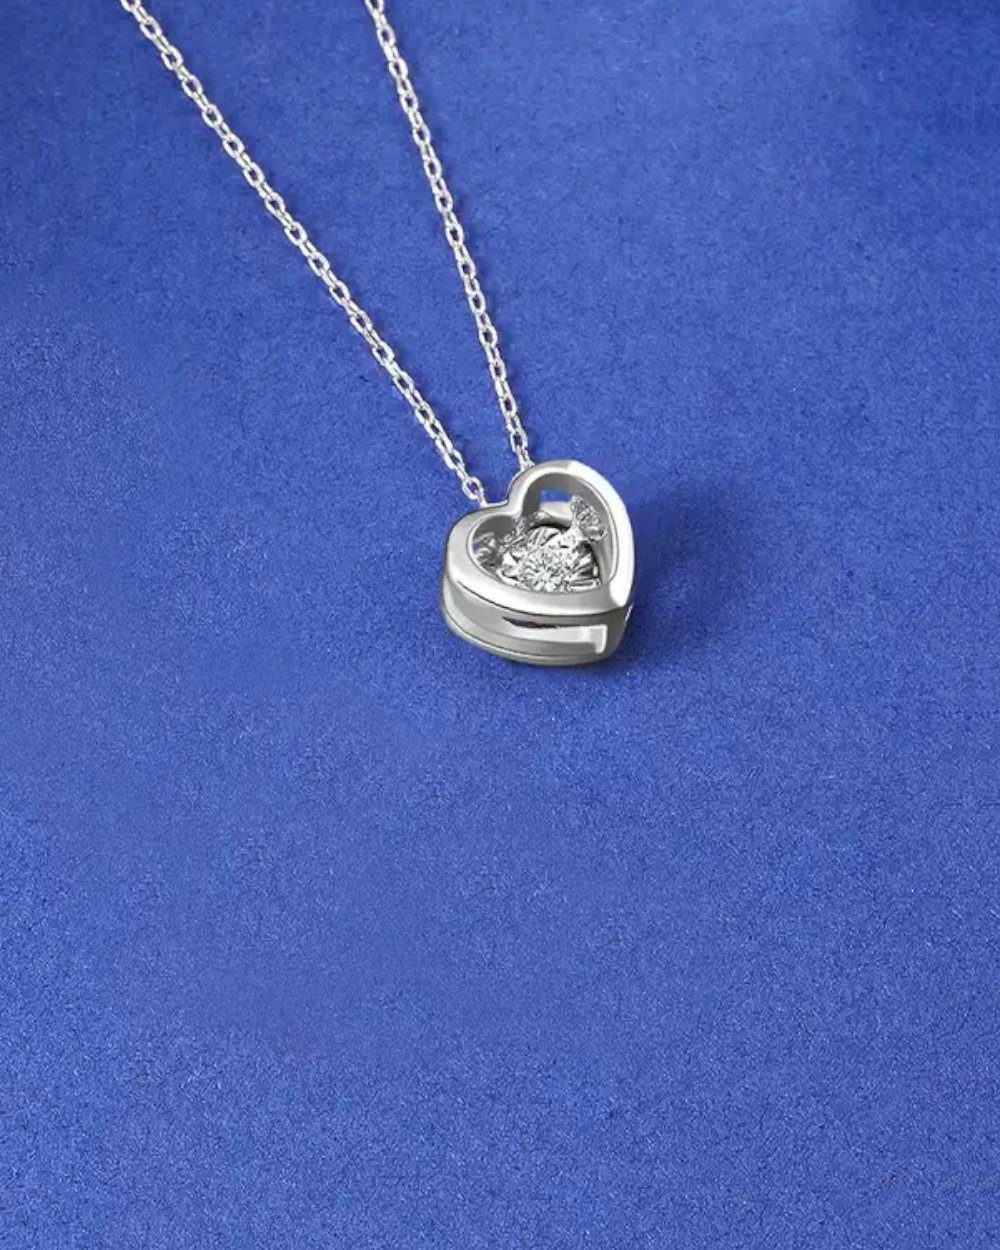 DANIEL CLIFFORD Herzkette Silber größenverstellbare Kristall Silberkette, 45cm 925 - Herz-Anhänger Halskette Damen 'Corina' Moissanit, 40cm Herzform